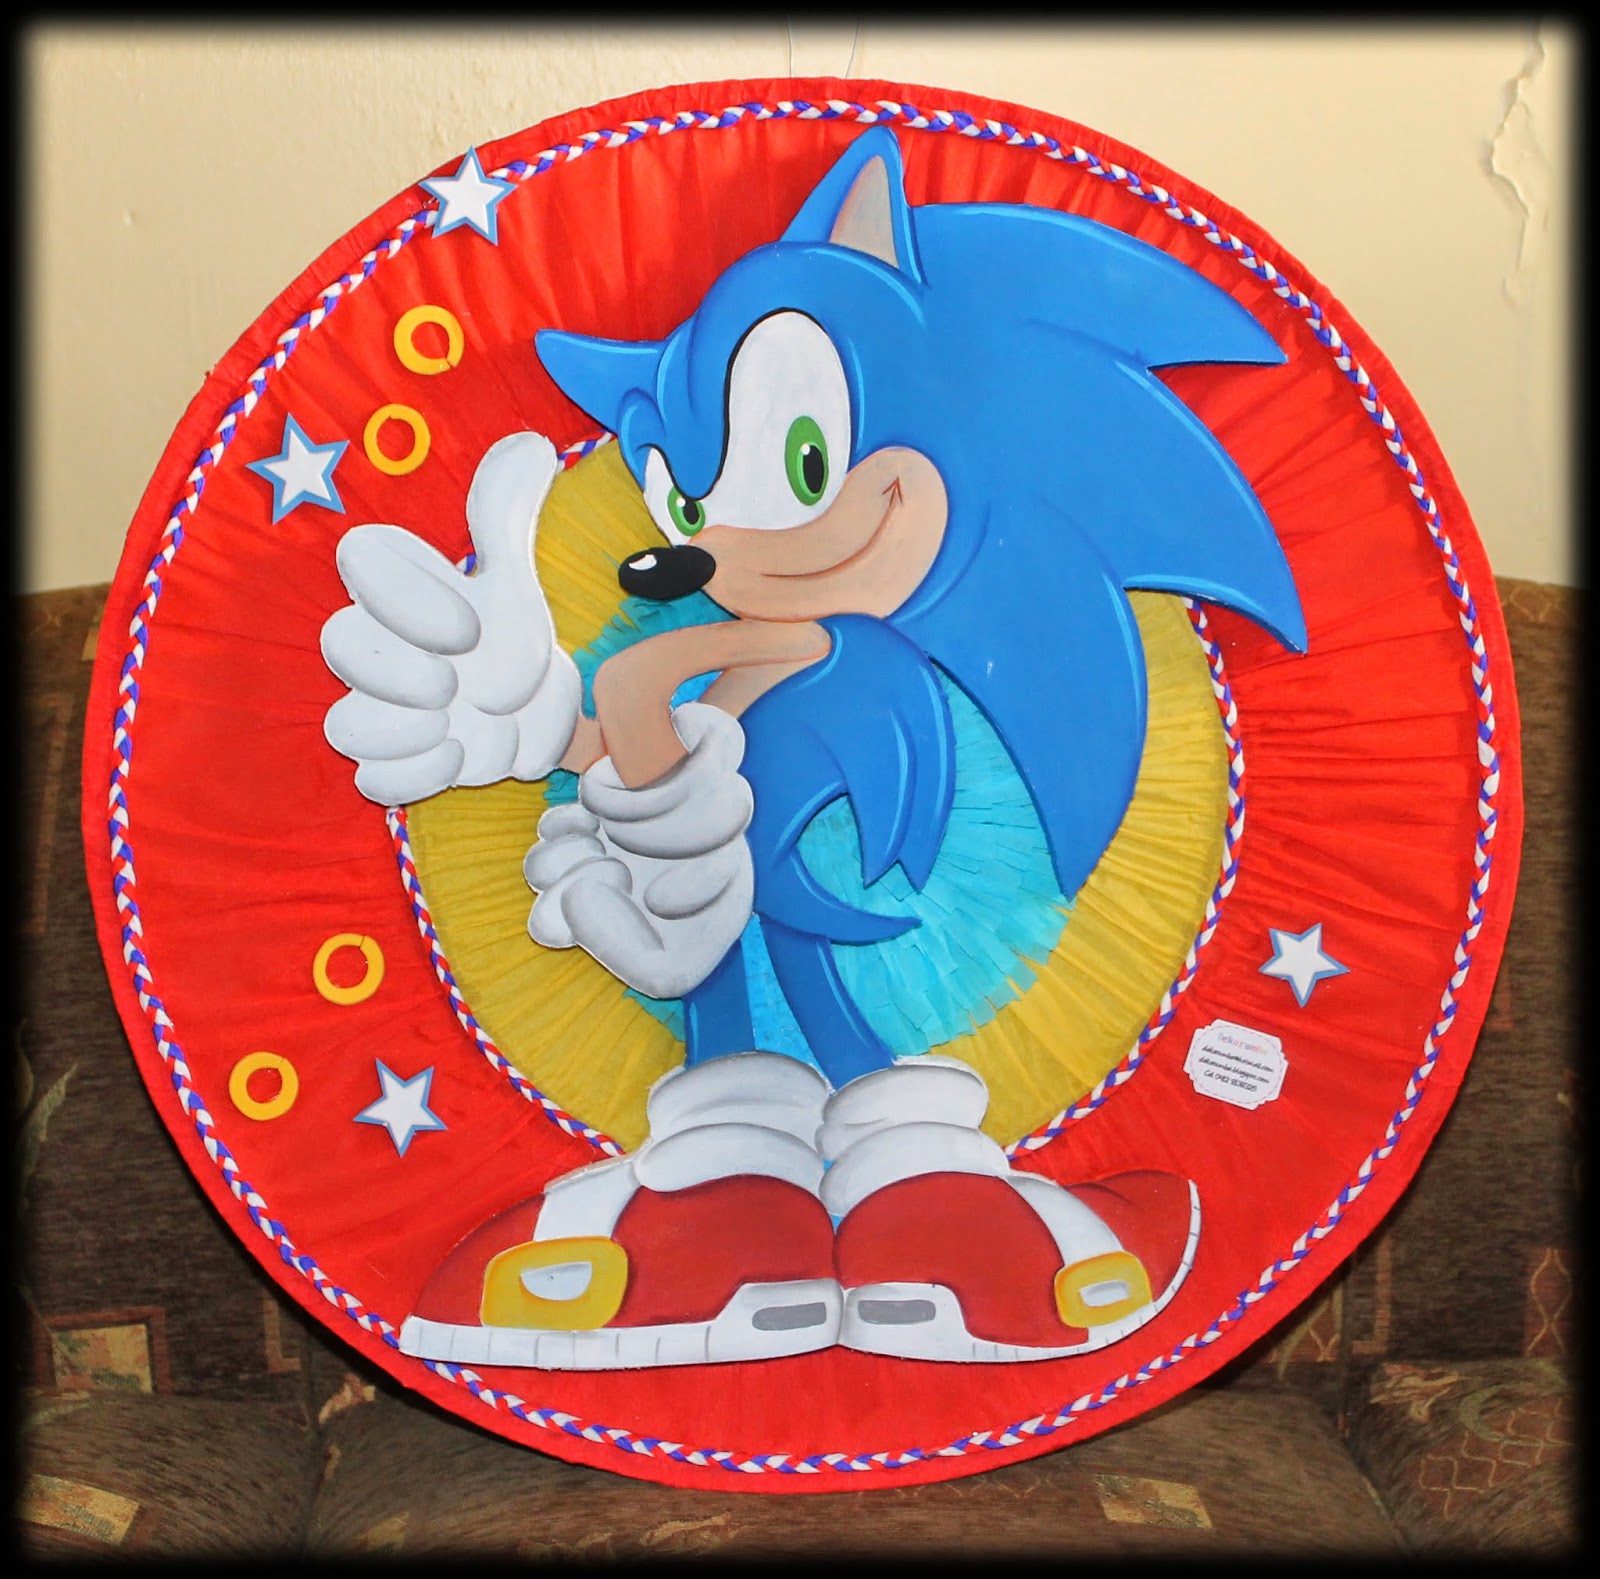 Pinata De Sonic The Hedgehog Fiesta De Sonic Pinatas Fiestas De Images